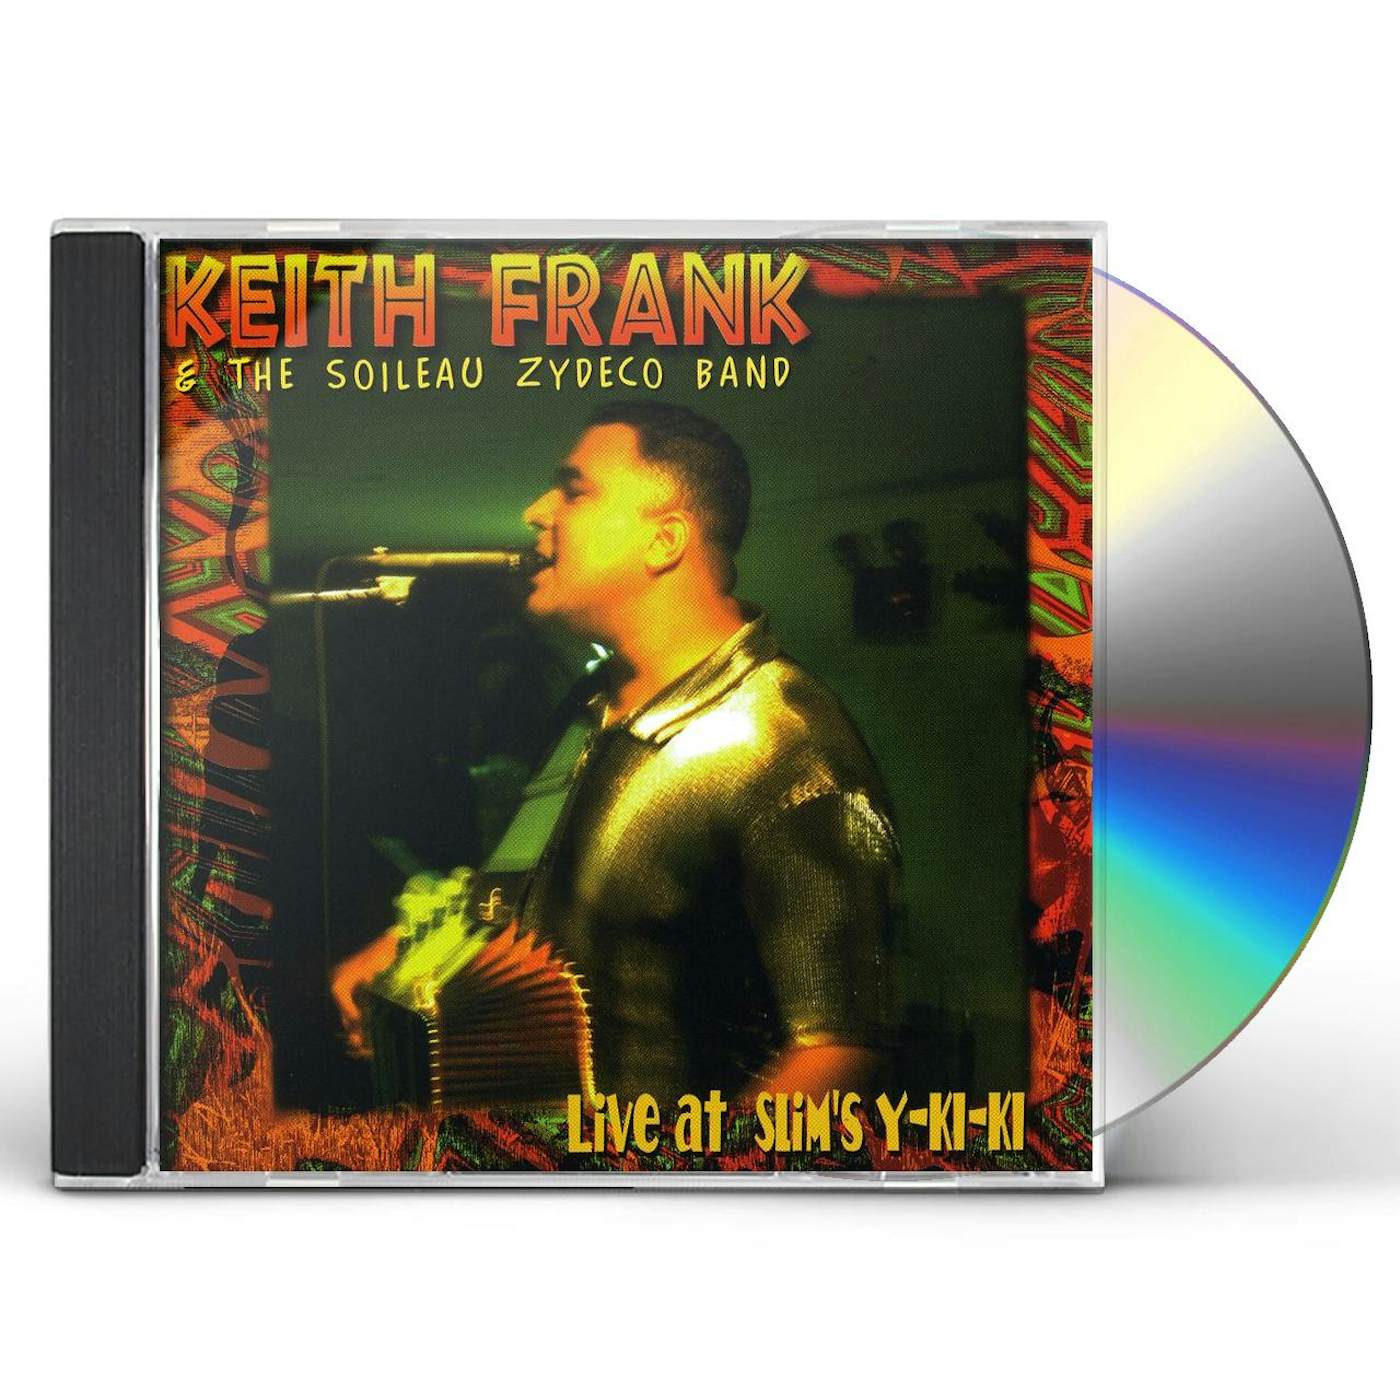 Keith Frank LIVE AT SLIM'S Y-KI-KI CD